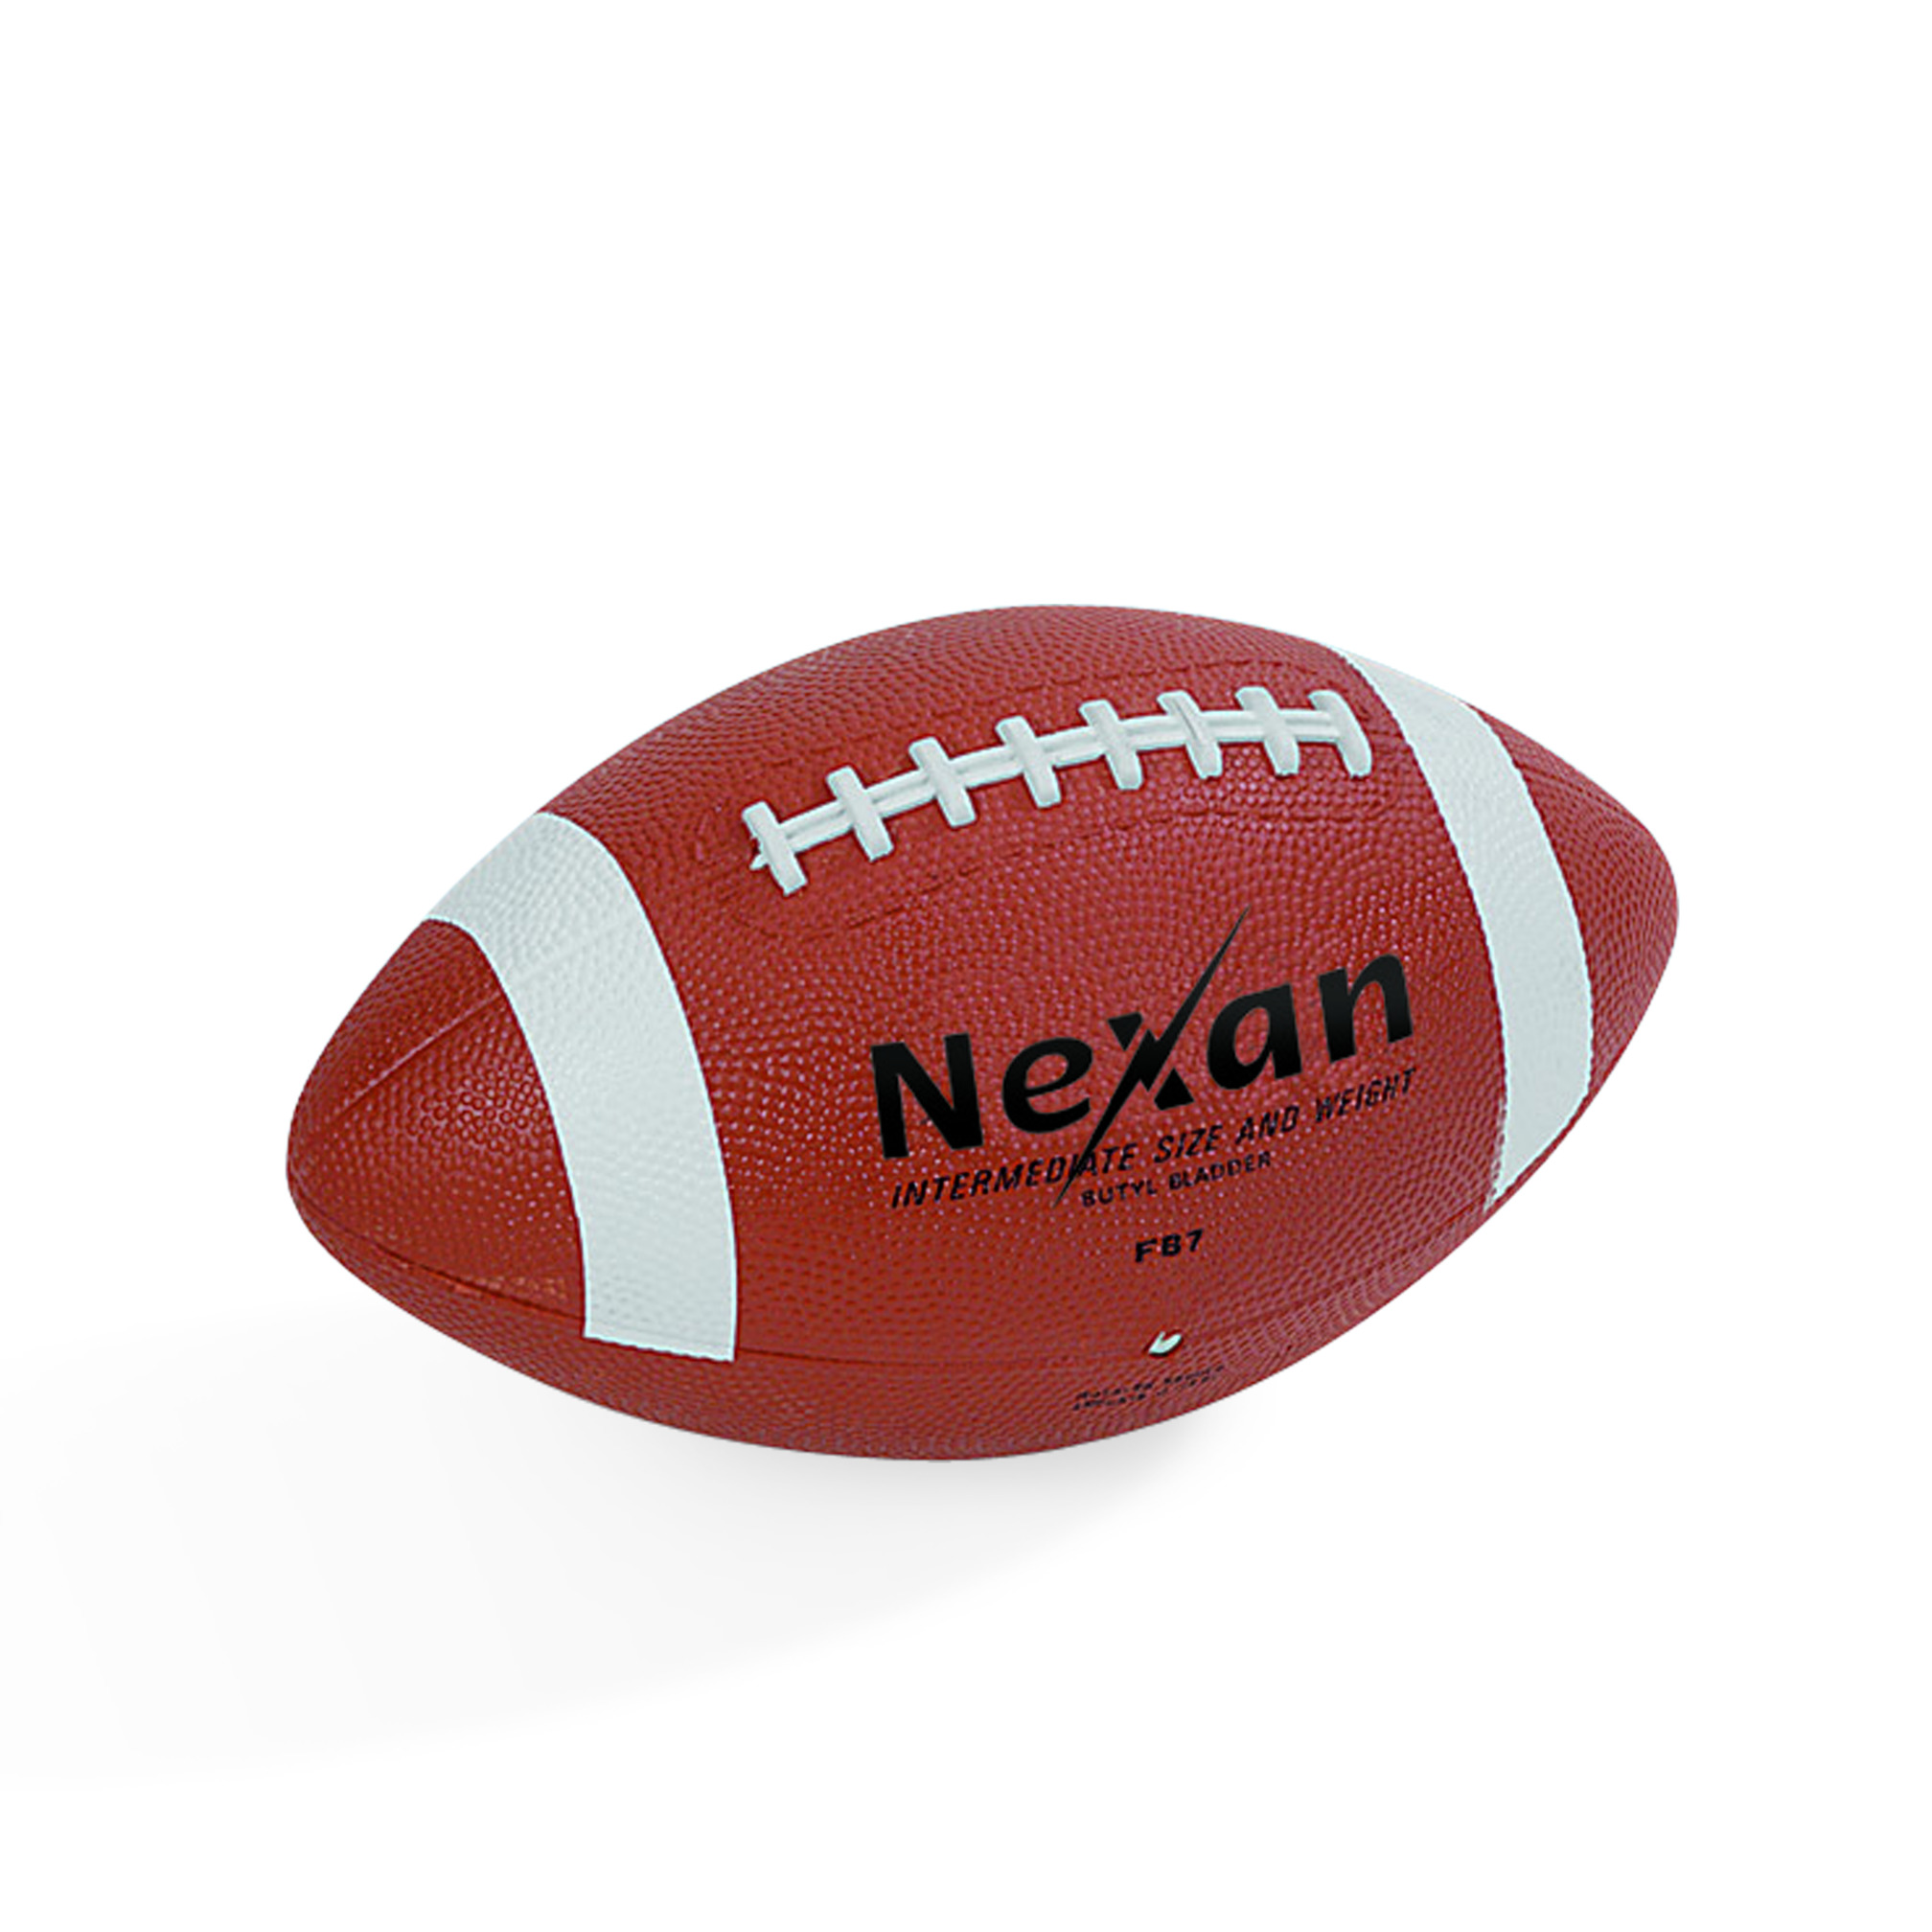 American Football Nexan Senior